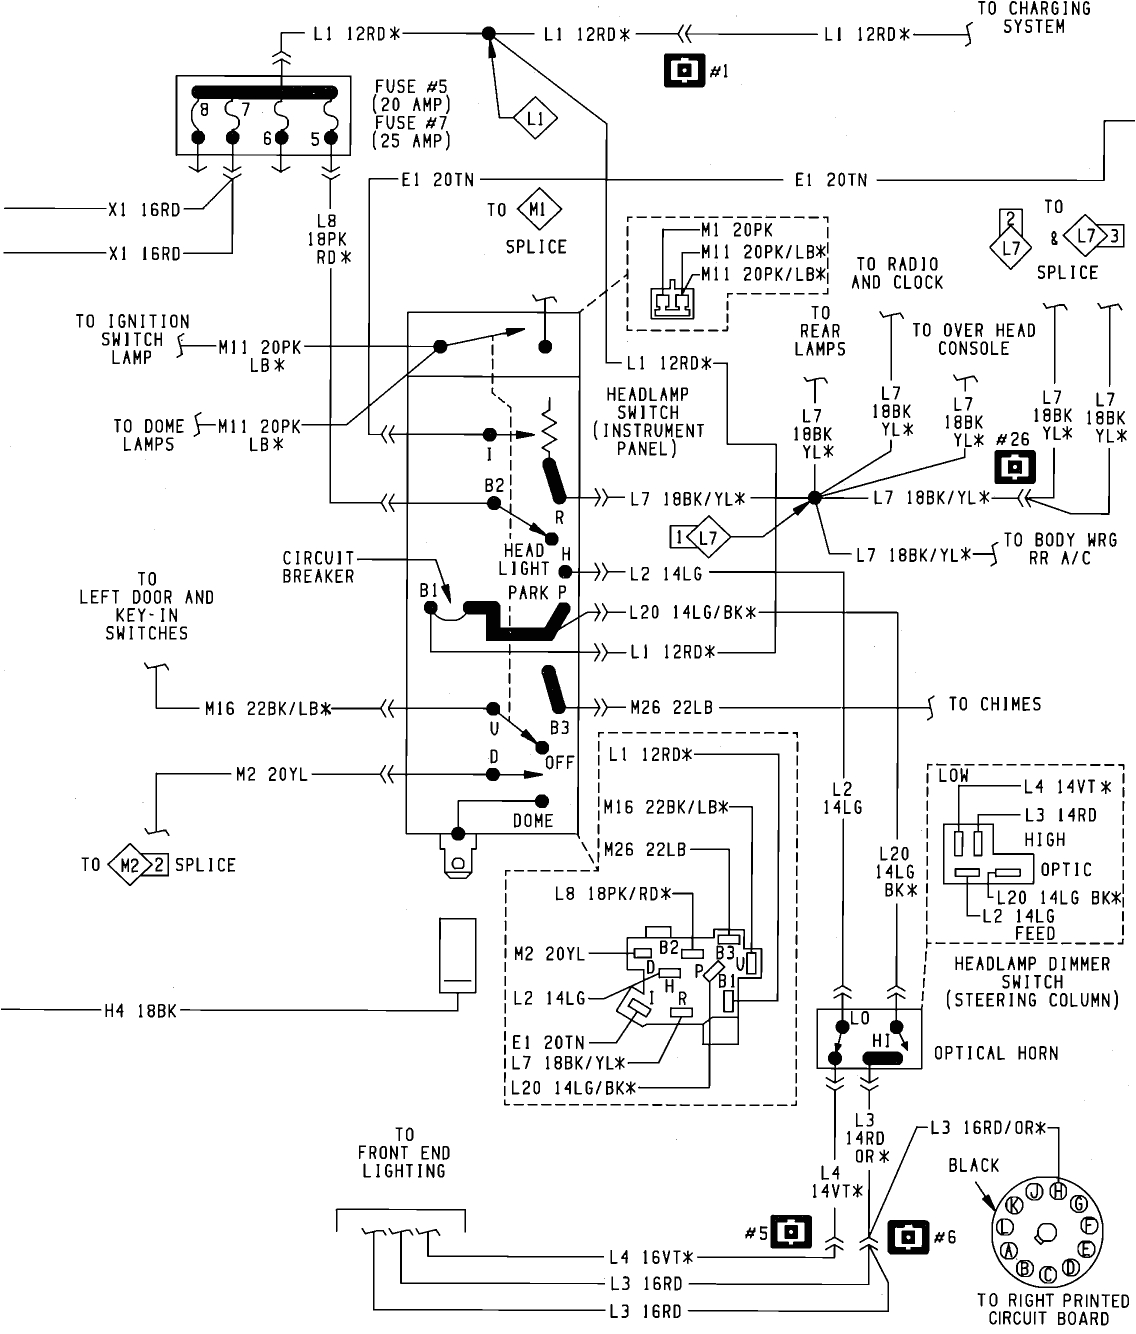 chrysler voyager 2003 wiring diagram wiring diagram save wiring diagram chrysler grand voyager 2003 chrysler voyager